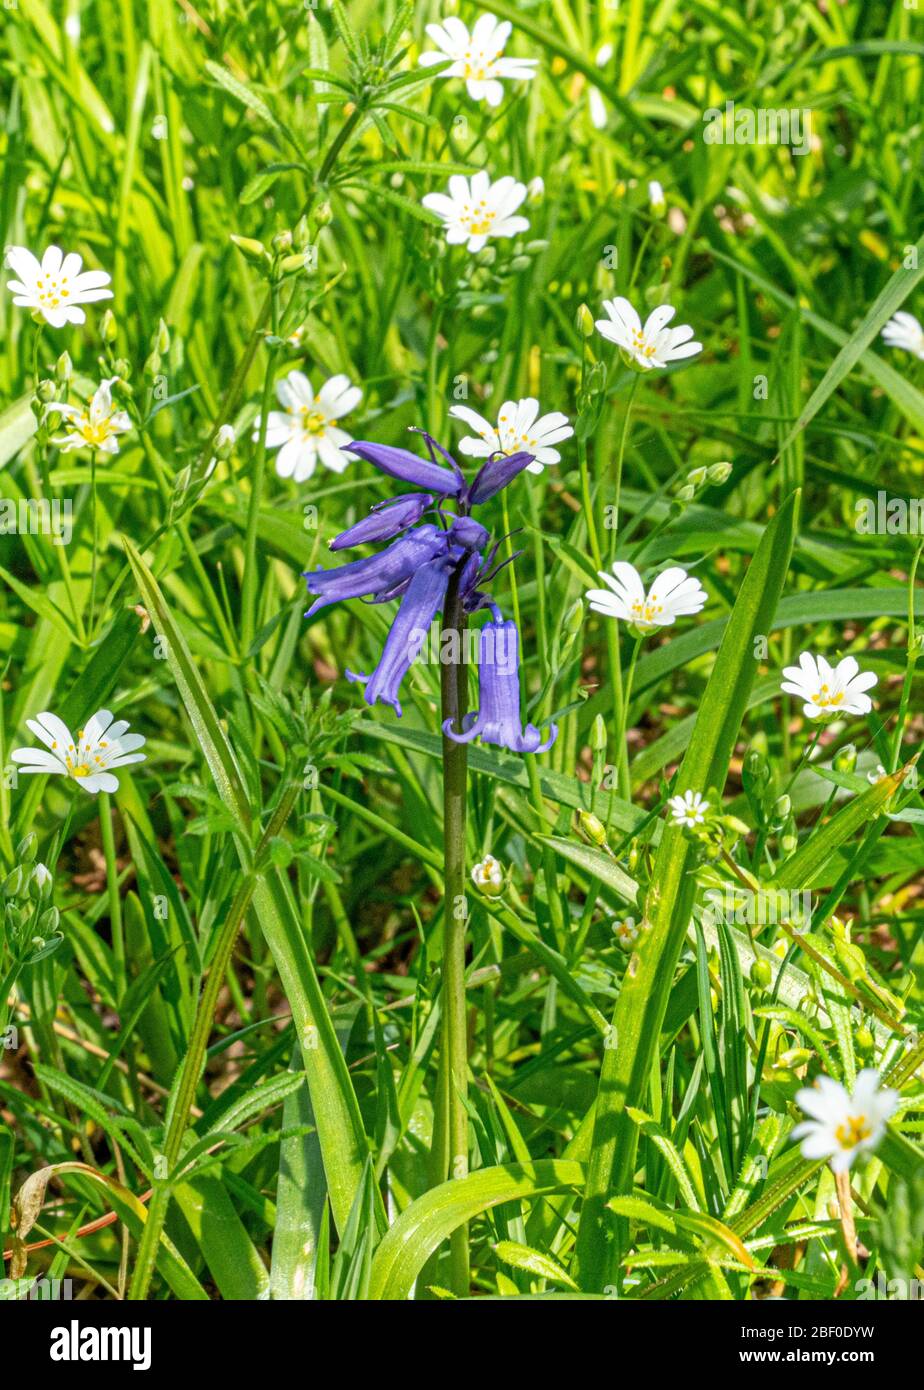 Imágenes de Bluebell de la primera semana de Bluebells en la primavera de Bluebell en Hertfordshire Abril 2020. Mostrando flores azules en verde y bosque flo Foto de stock